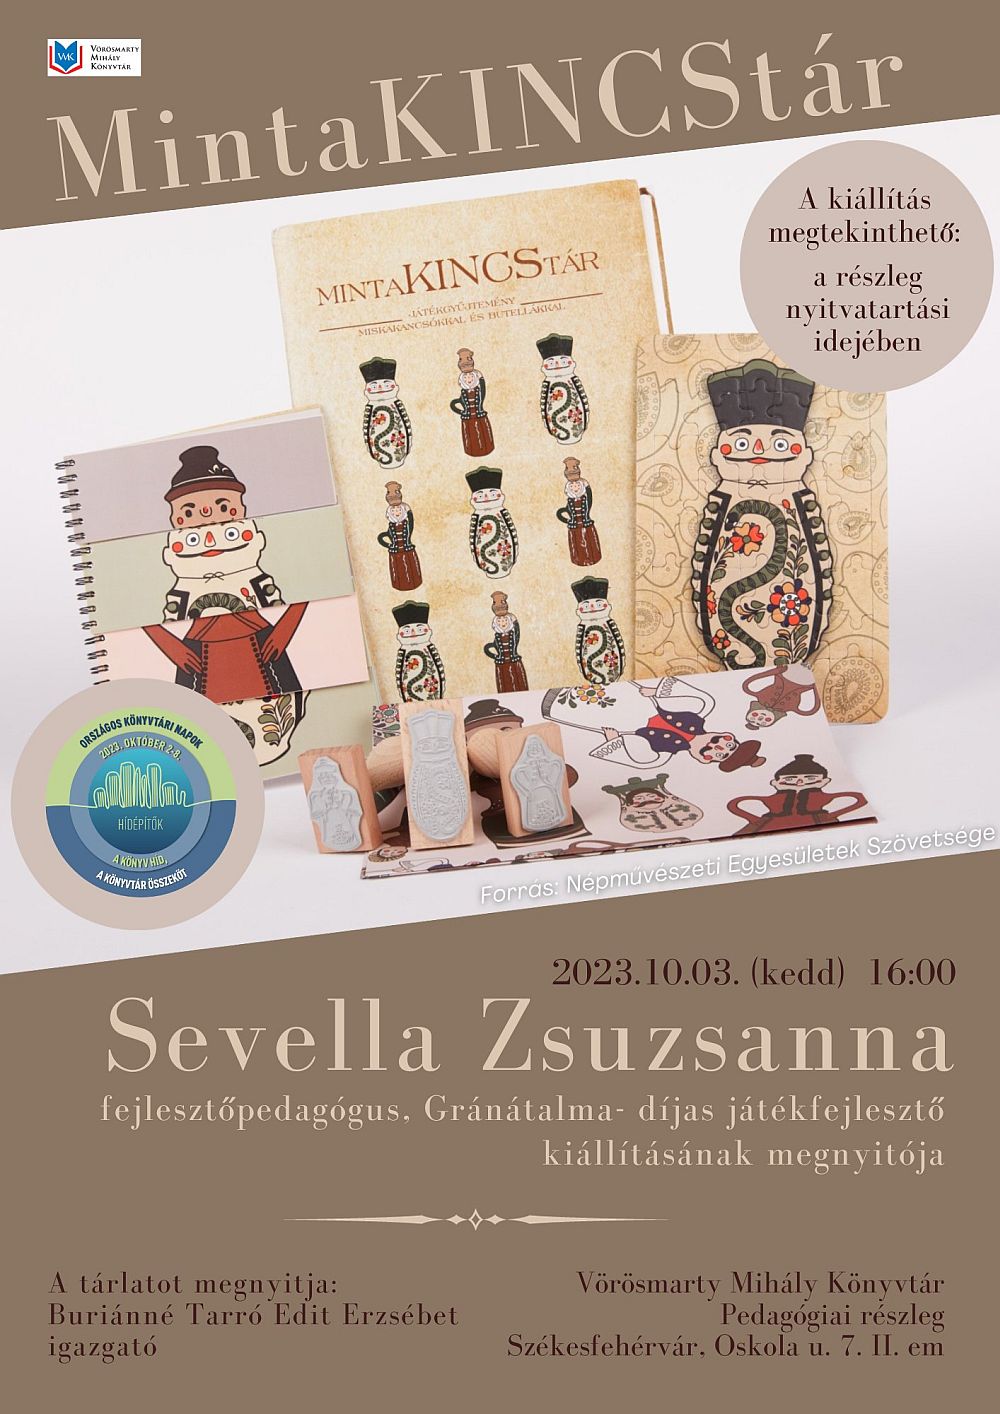 MintaKINCStár – Sevella Zsuzsanna alkotásaiból nyílik kiállítás a Vörösmarty Mihály Könyvtárban